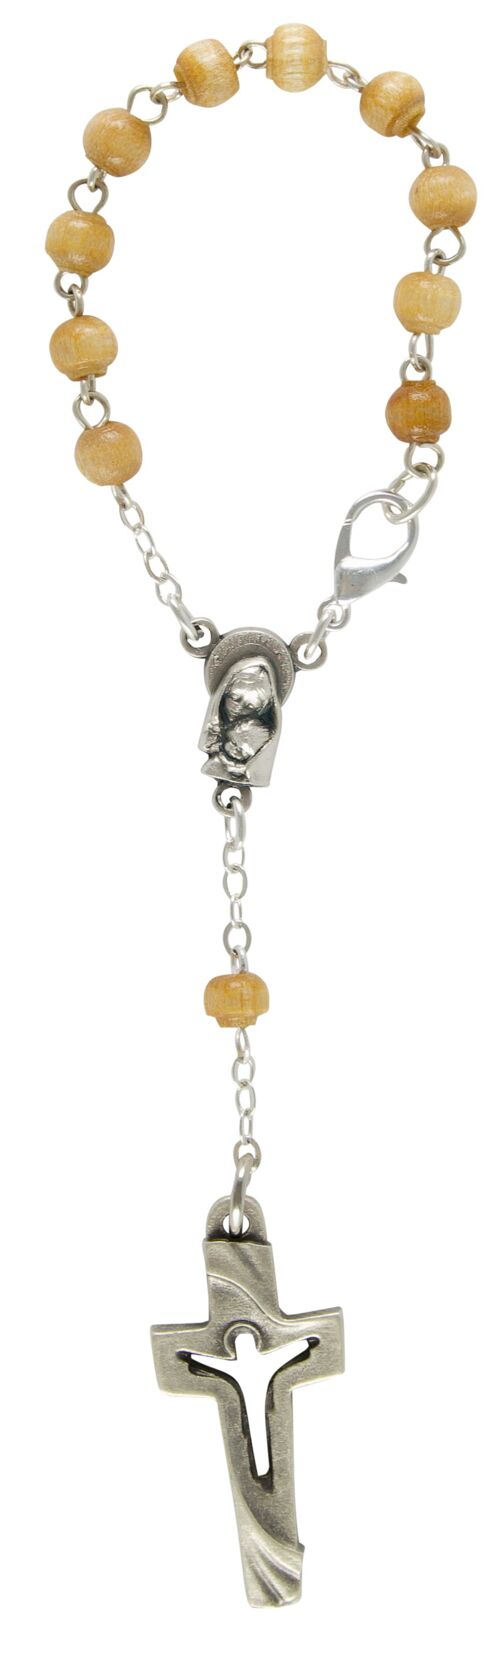 Zehner-Rosenkranz hellbraun Perle 6 mm, Kreuz modern